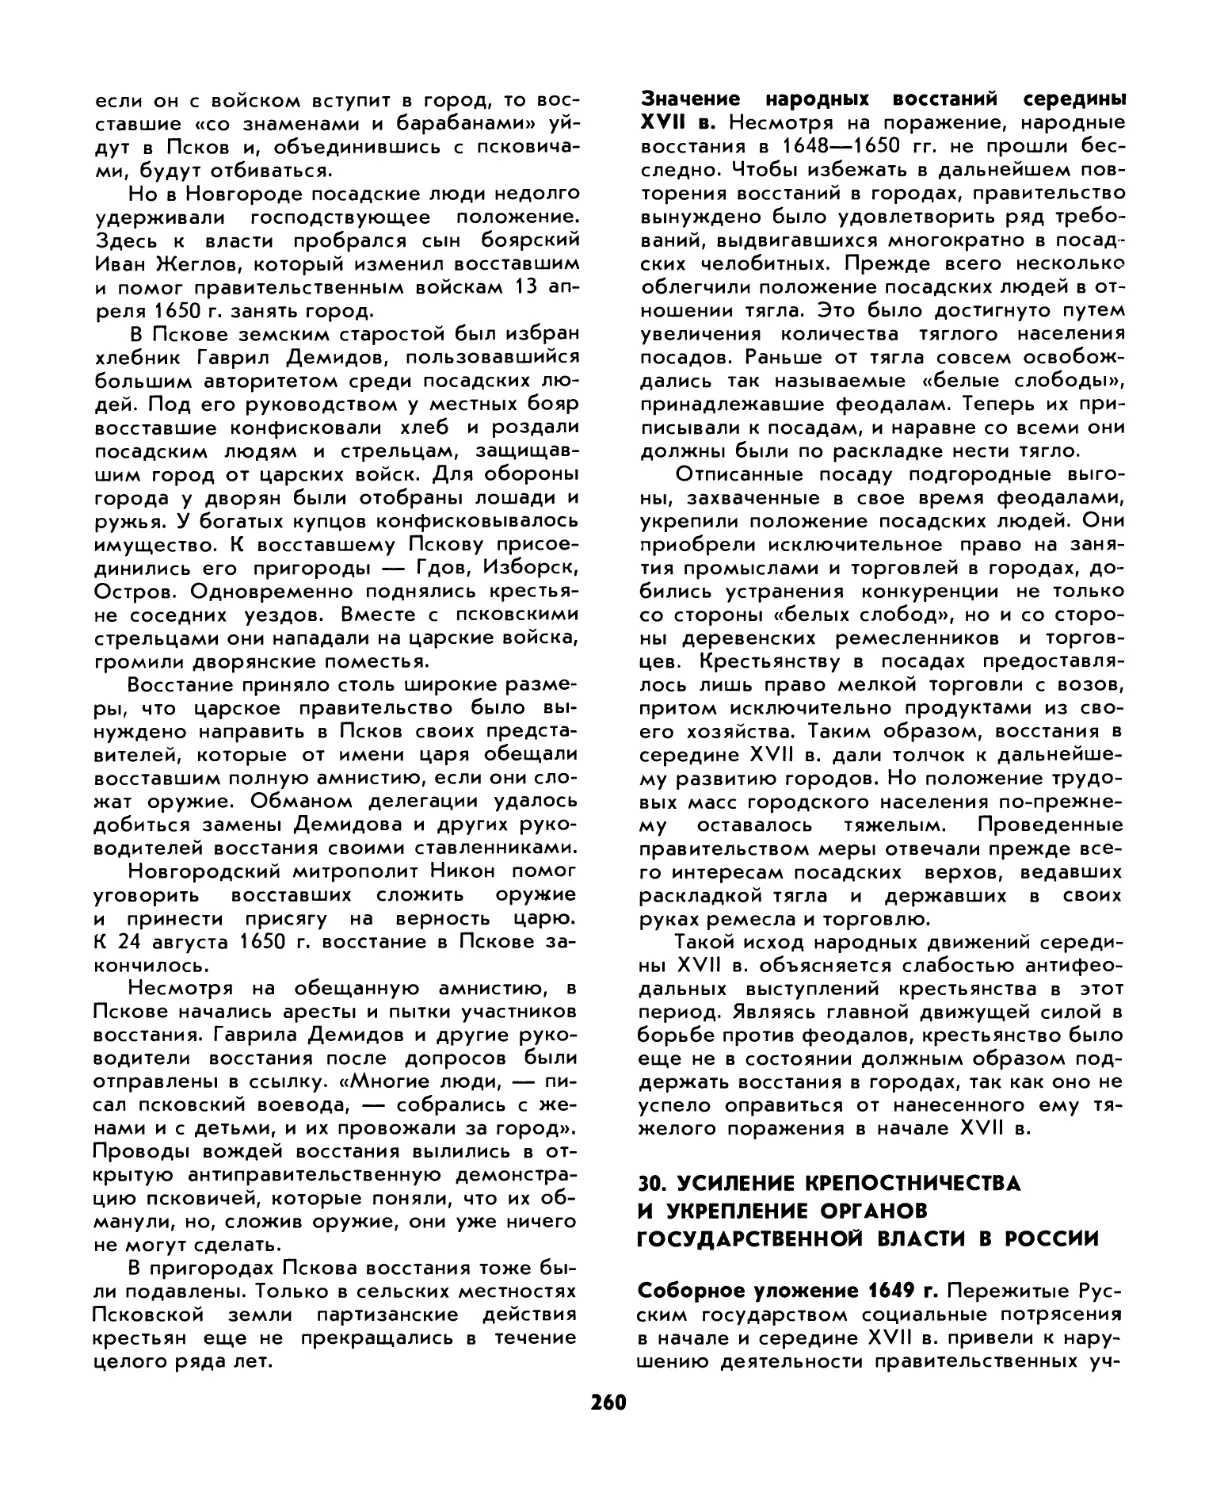 30. Усиление крепостничества и укрепление органов государственной власти в России